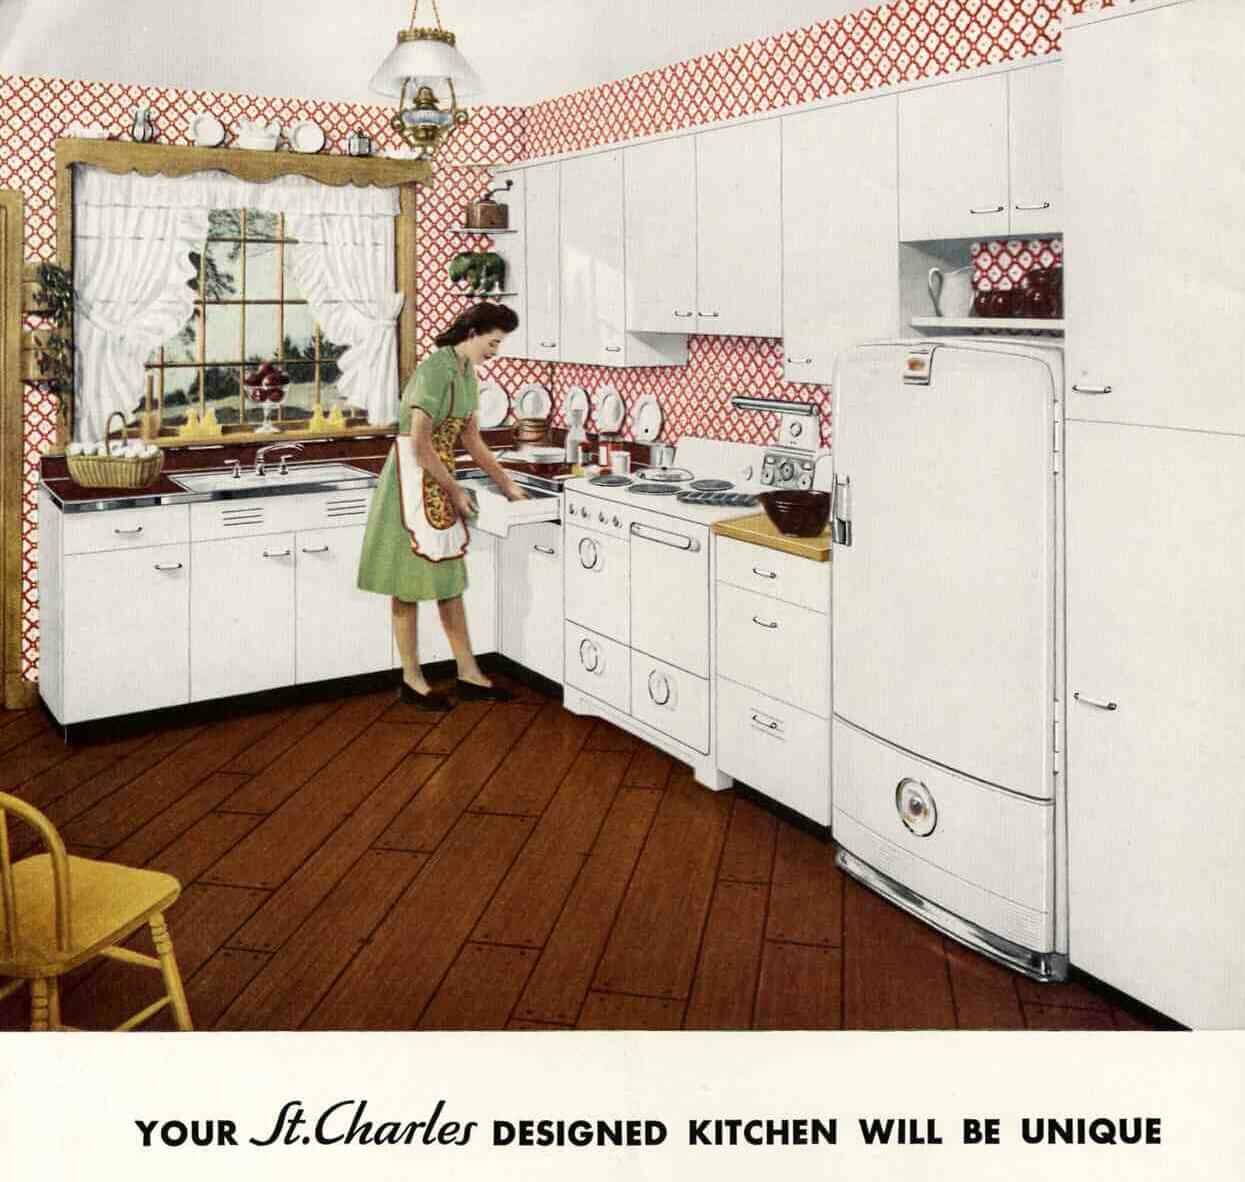 steel kitchen cabinets - history, design and faq - retro